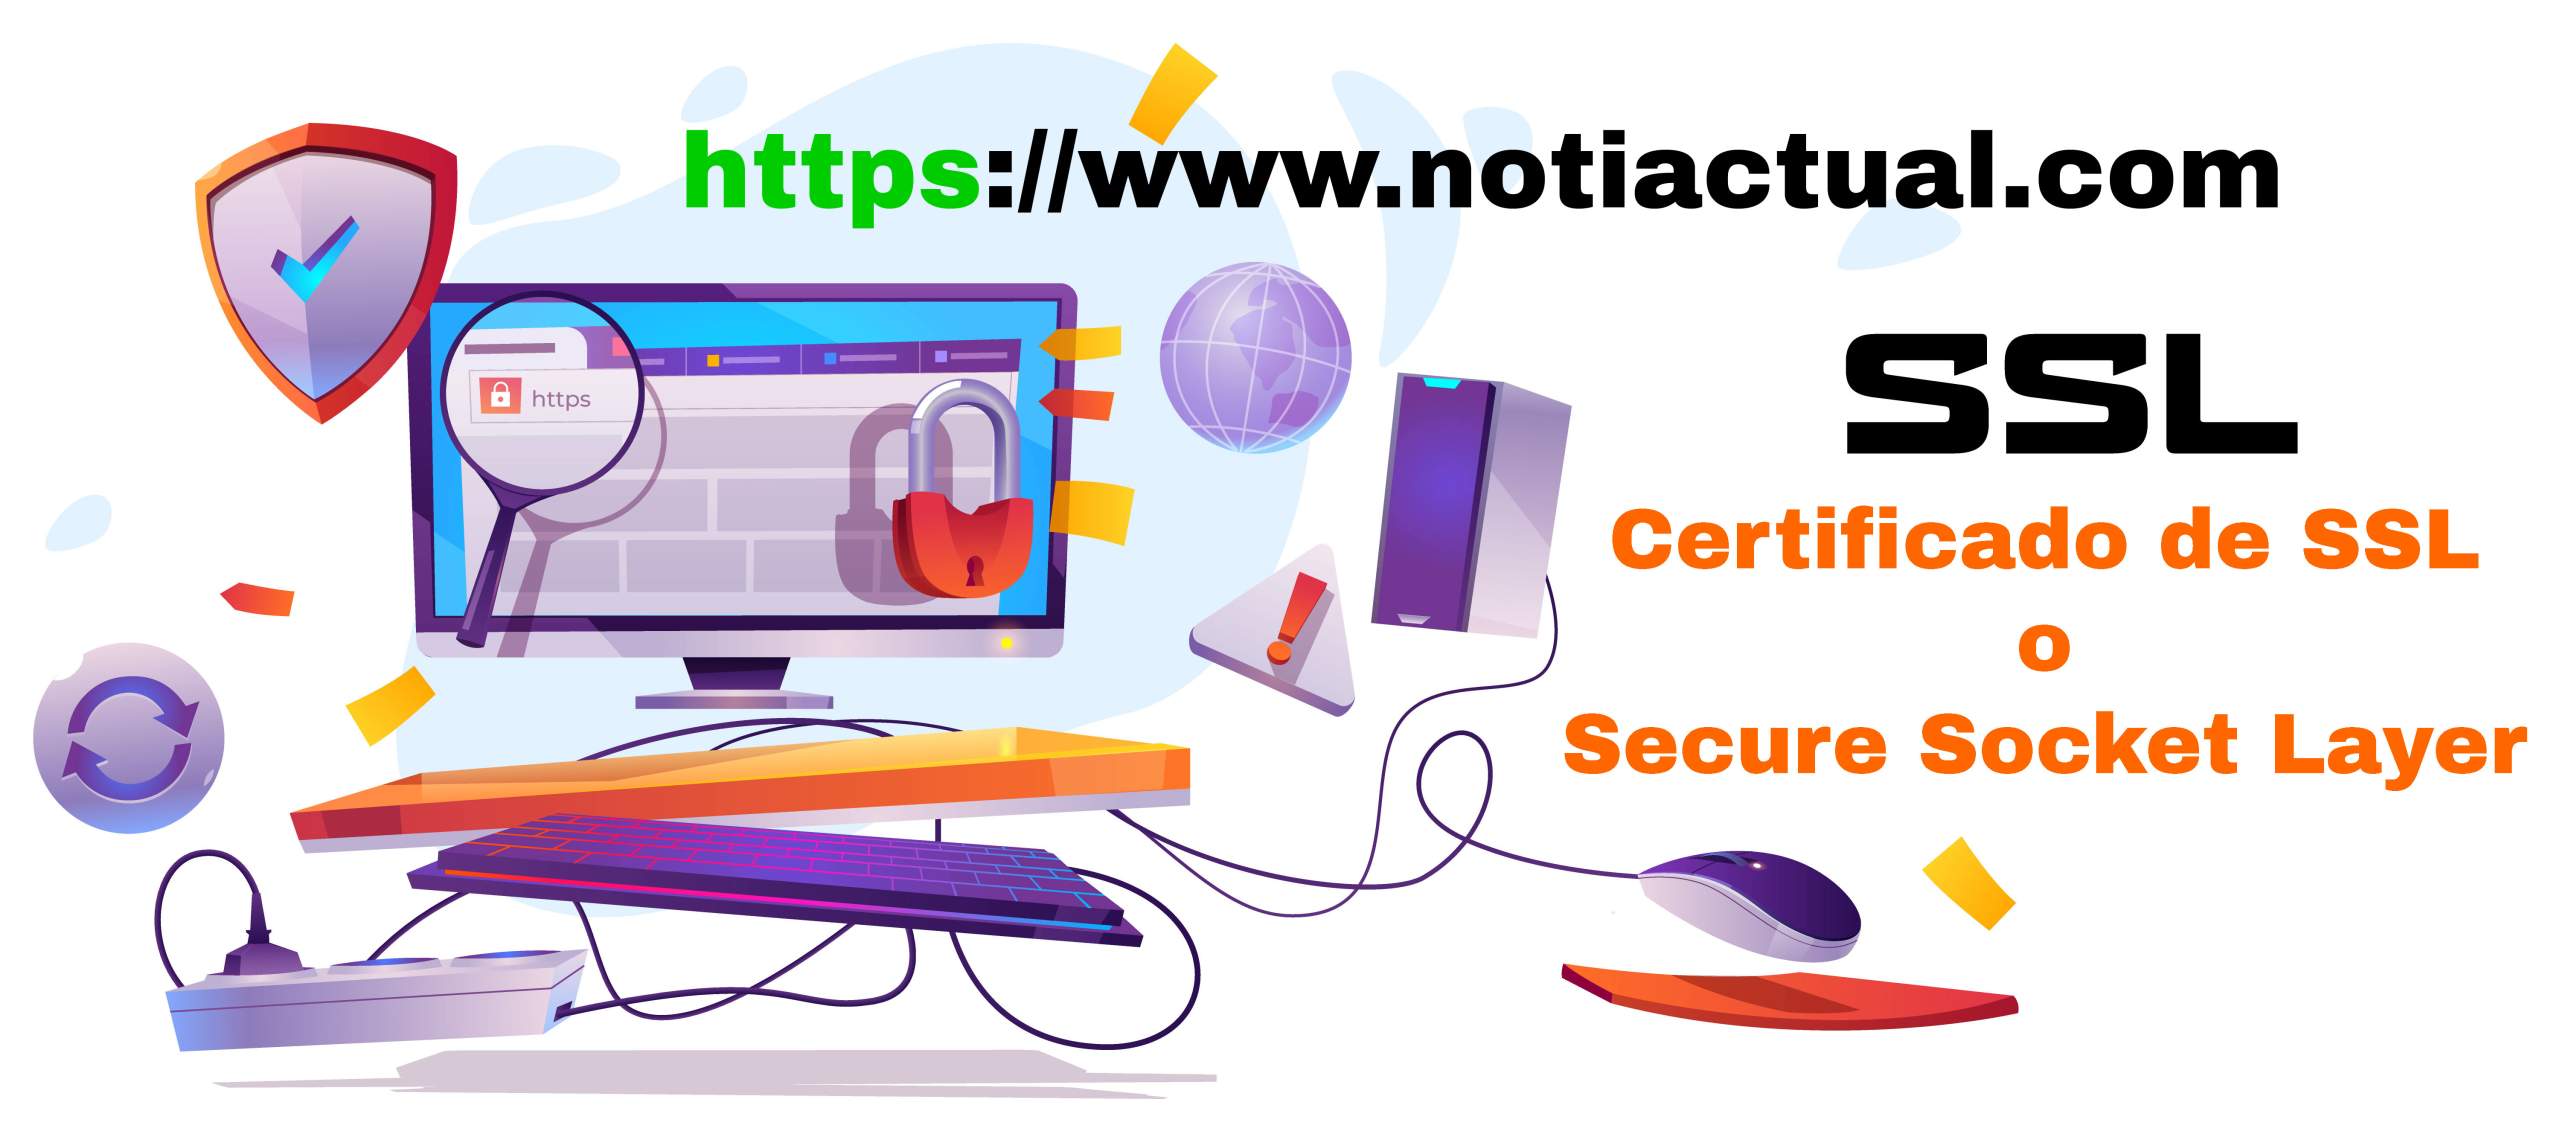 Que es un Certificado de SSL o Secure Socket Layer